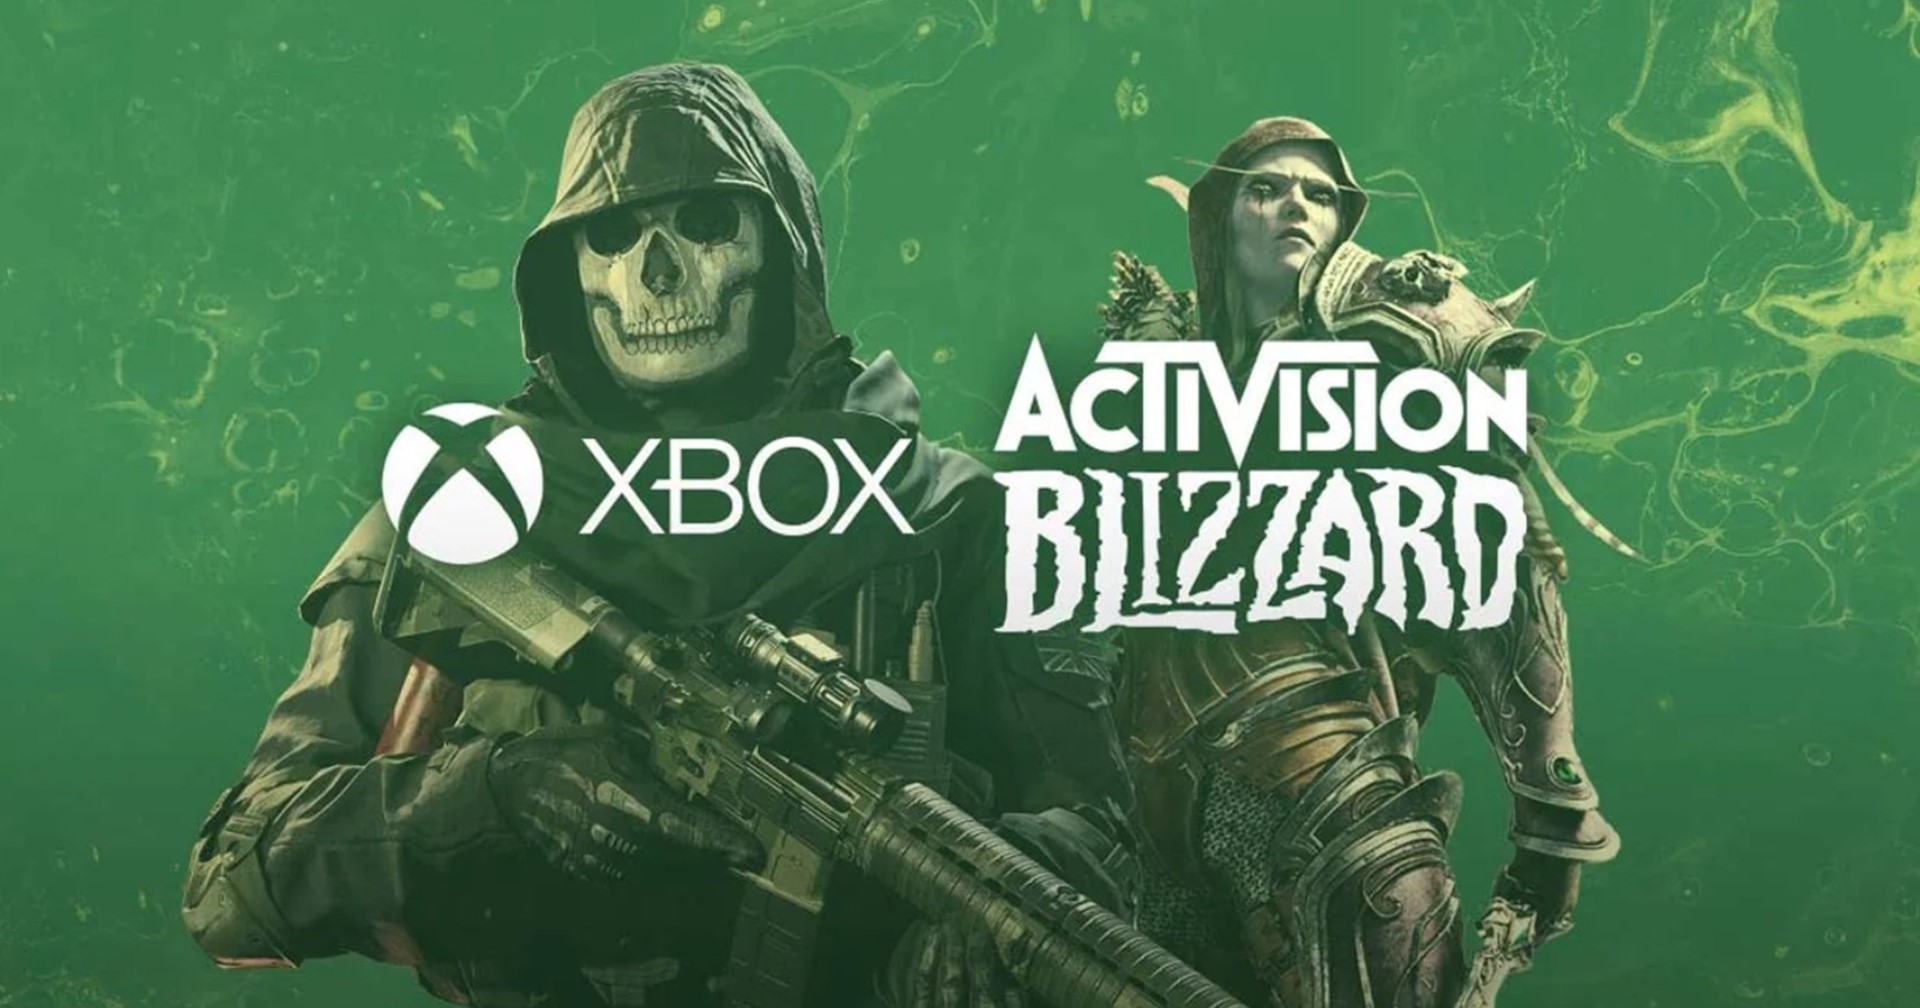 ท่าจะยาว FTC ฟ้อง Microsoft เพื่อระงับการเข้าซื้อ Activision Blizzard